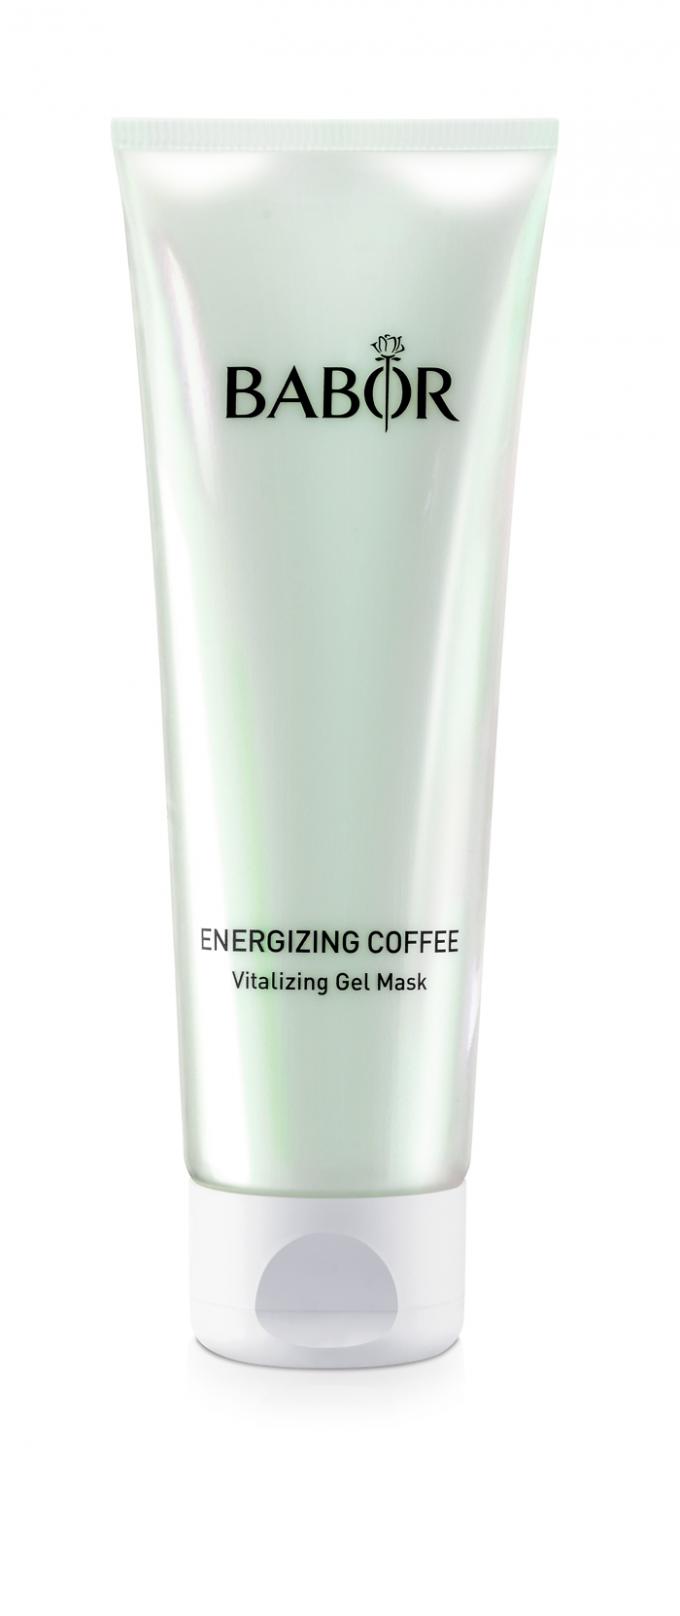 Babor Energizing Coffee Vitalizing Gel Mask